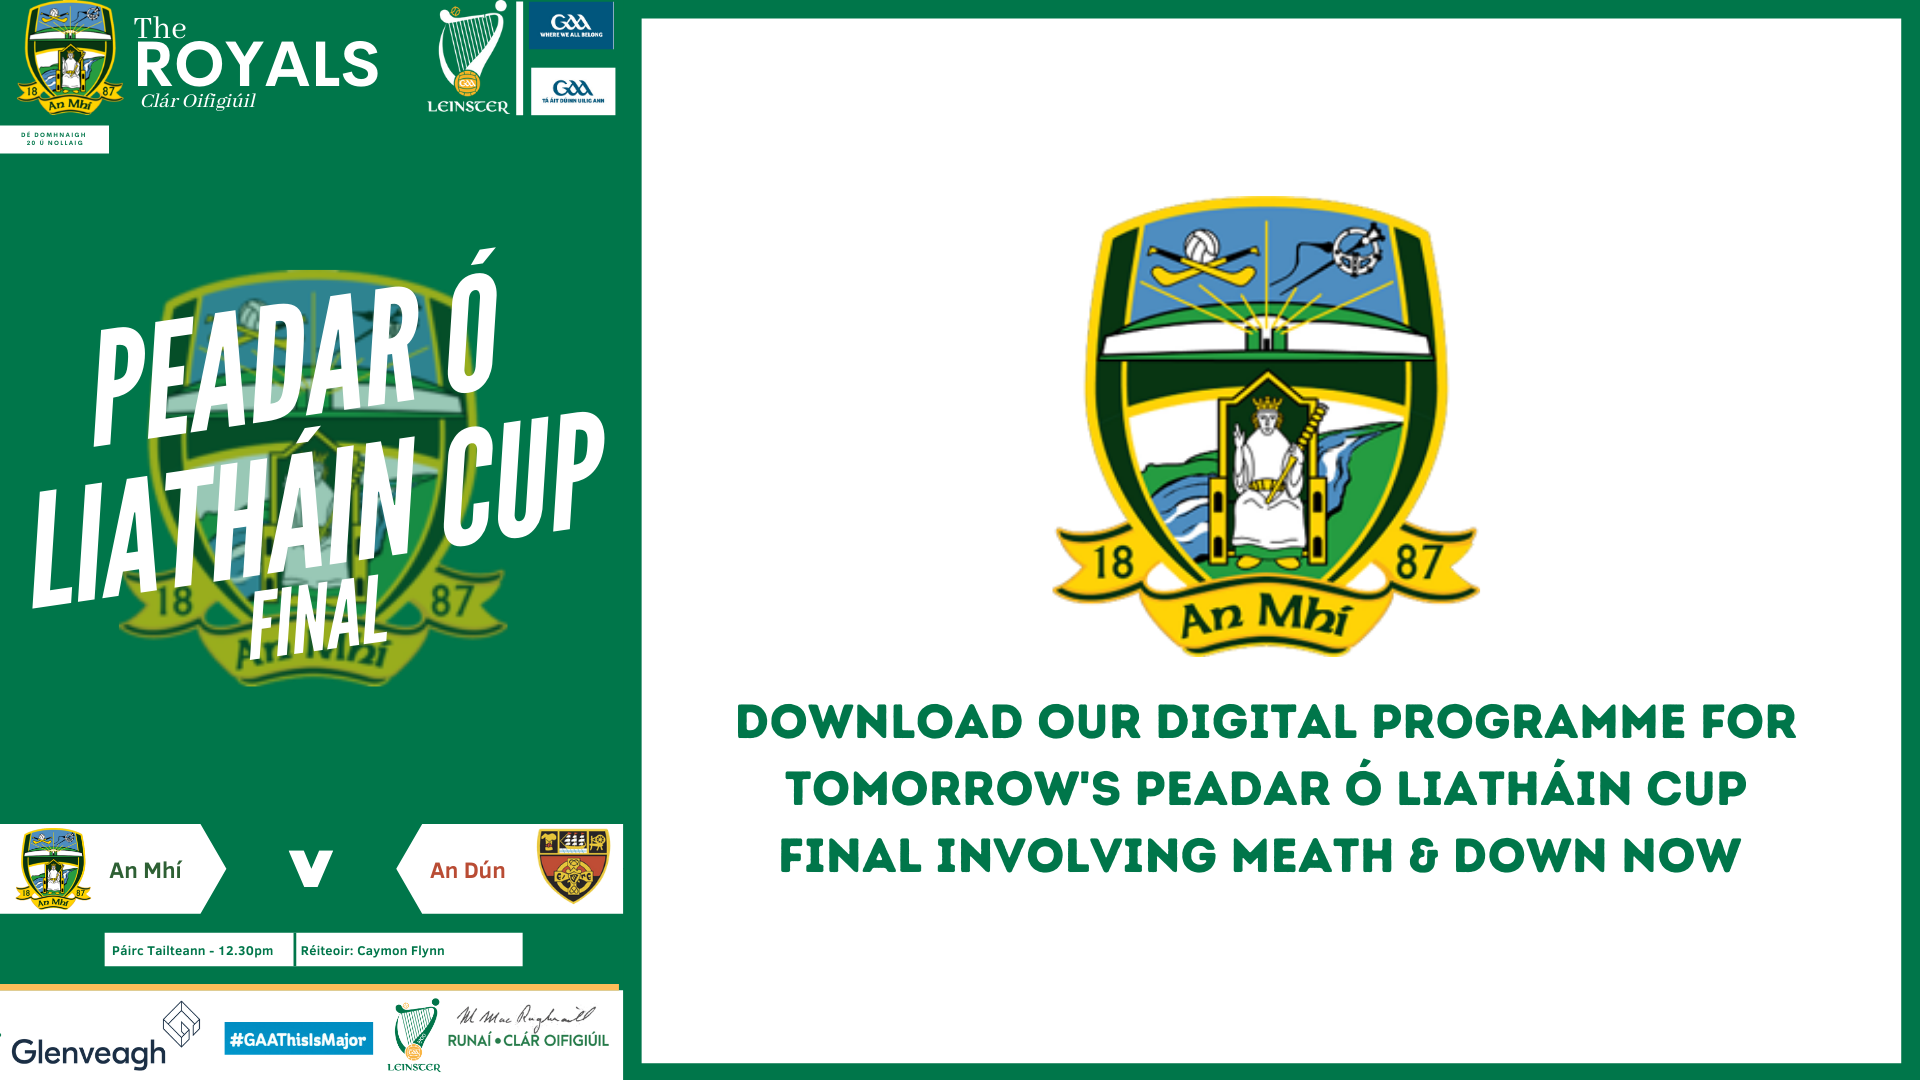 Get your Peadar Ó Liatháin Cup Final Programme now